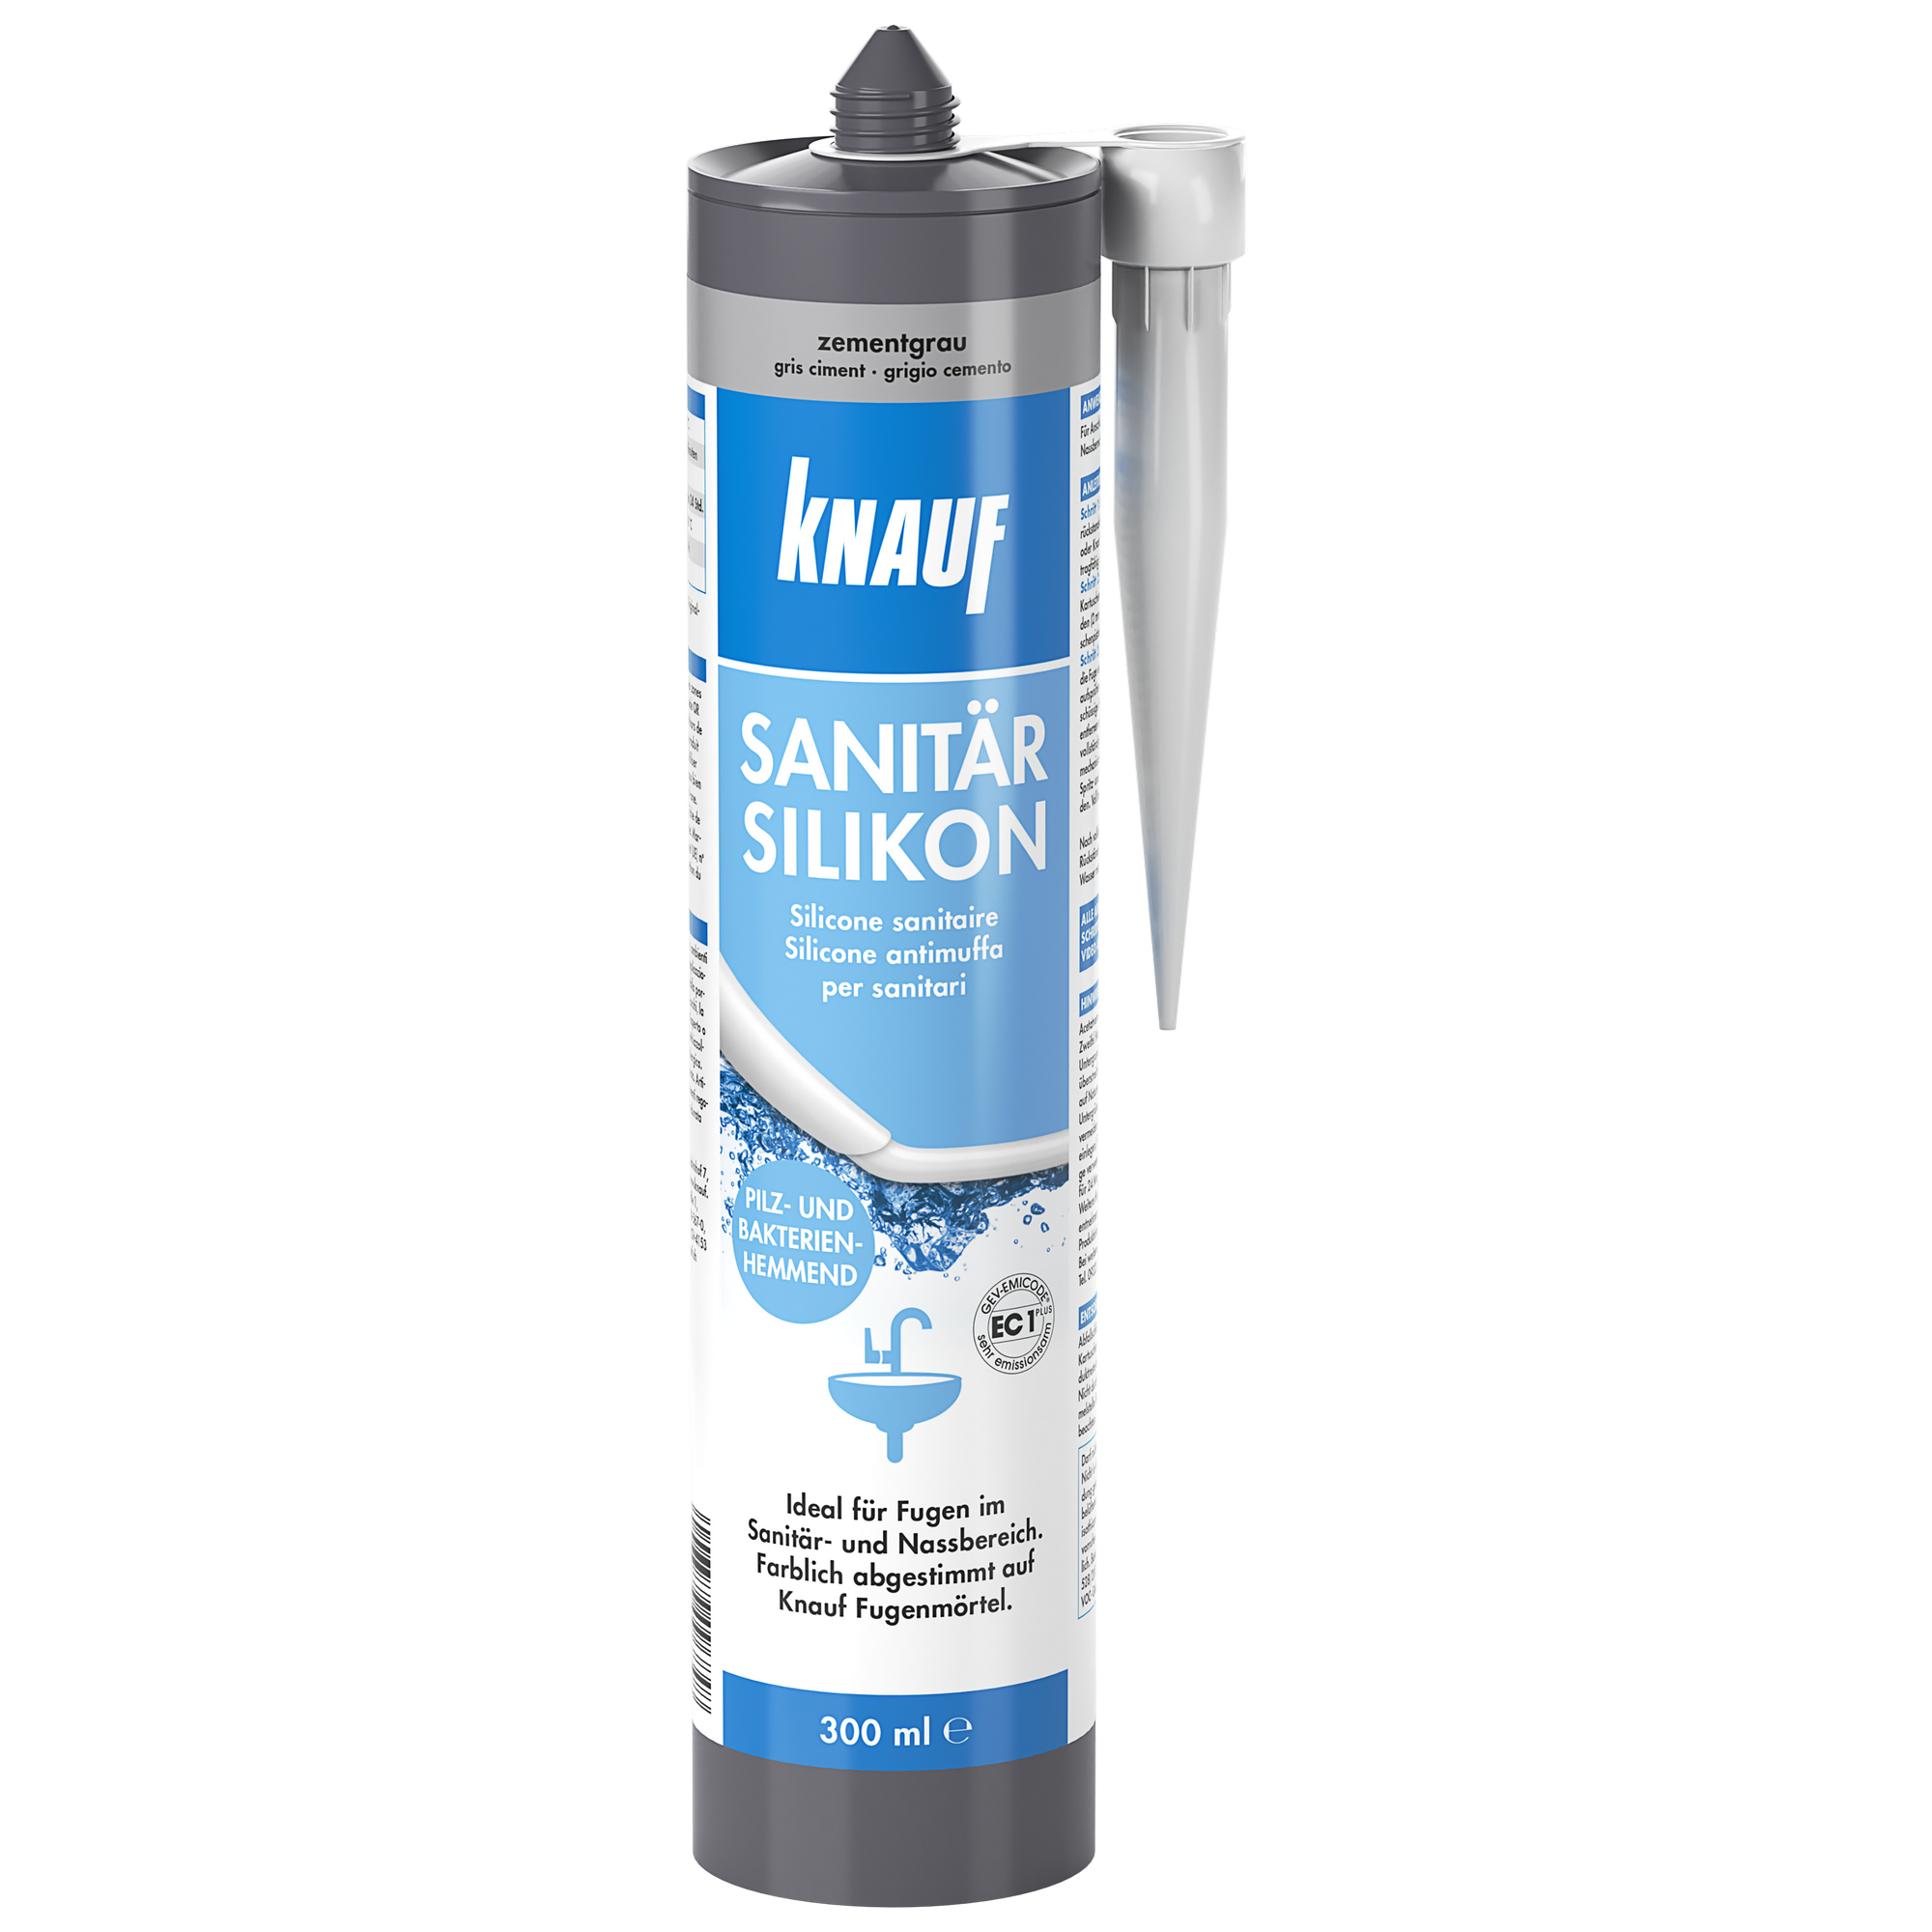 Sanitärsilikon zementgrau 300 ml + product picture